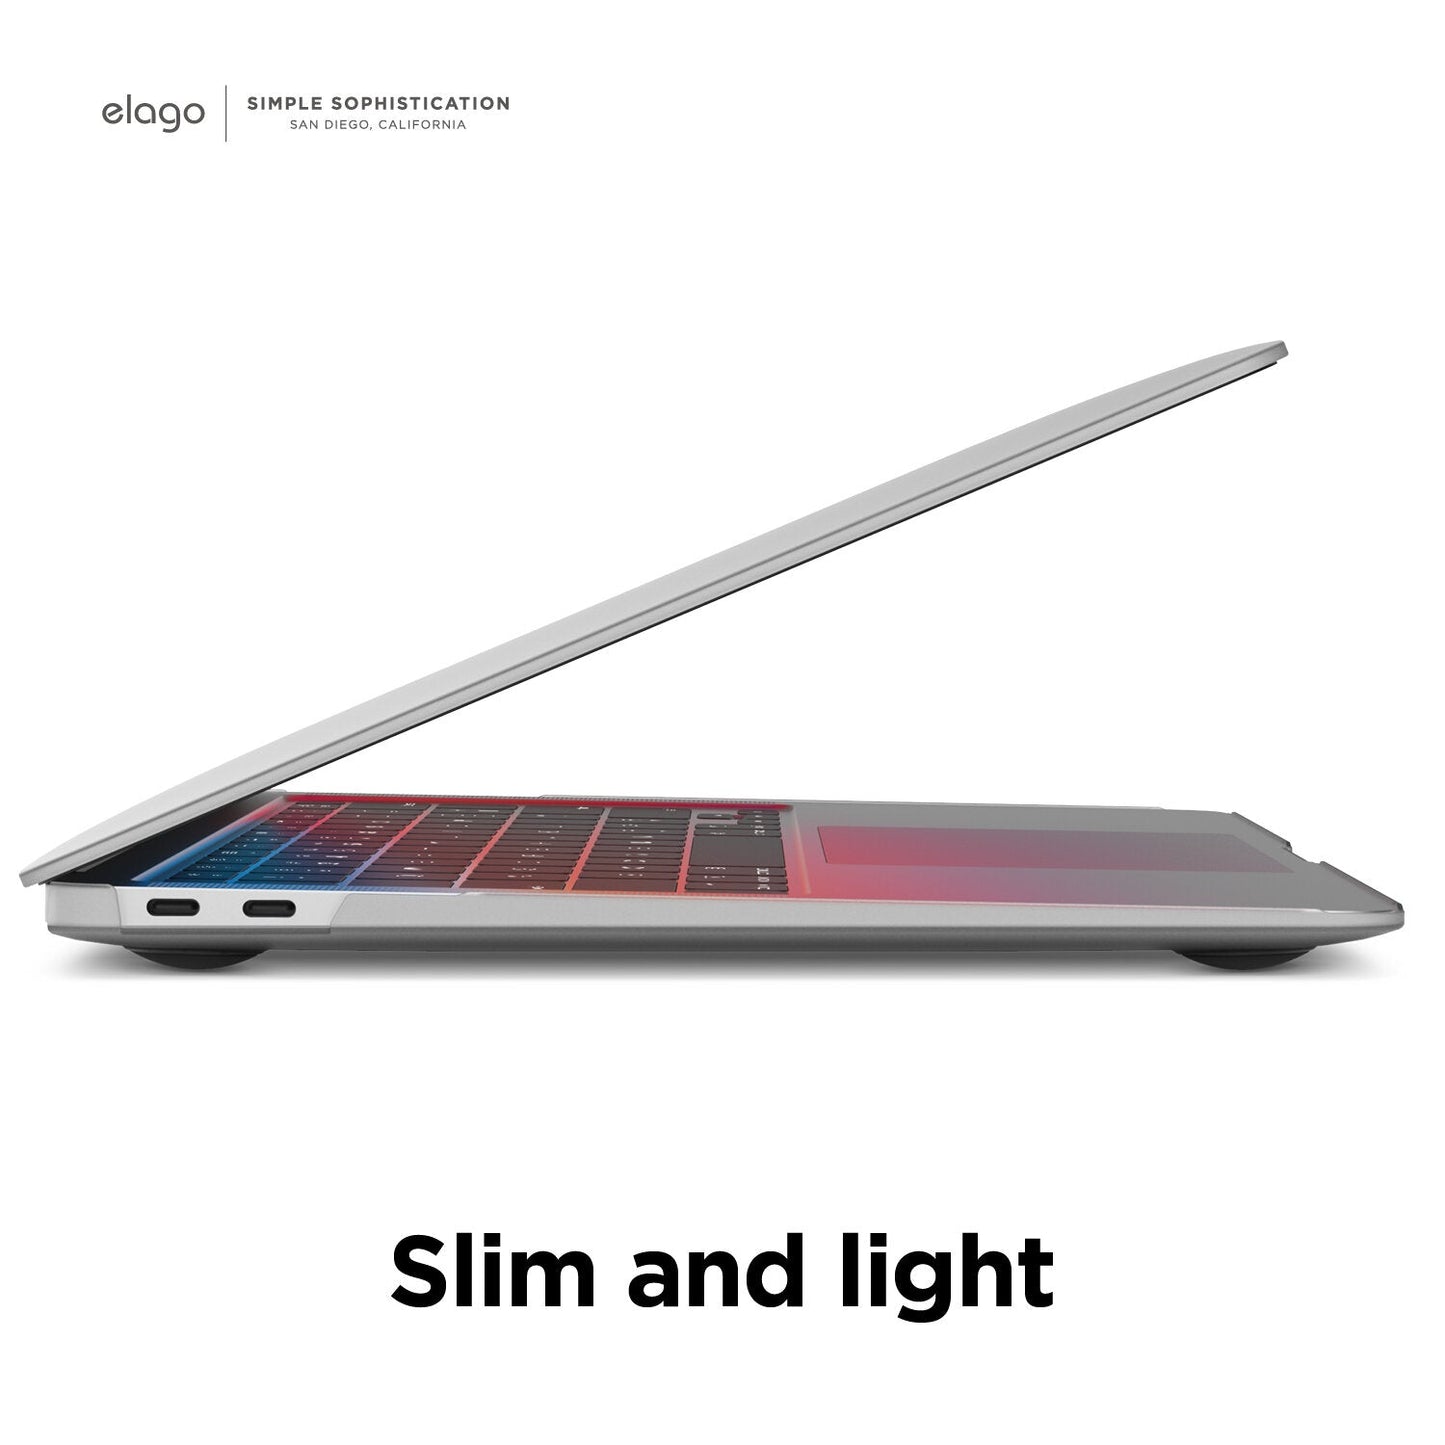 إلاجو جهاز MacBook آير 13 بوصة / إم1(2019-) MacBook 13 بوصة / (2019-) داخلي كور حافظة  - شفاف أبيض